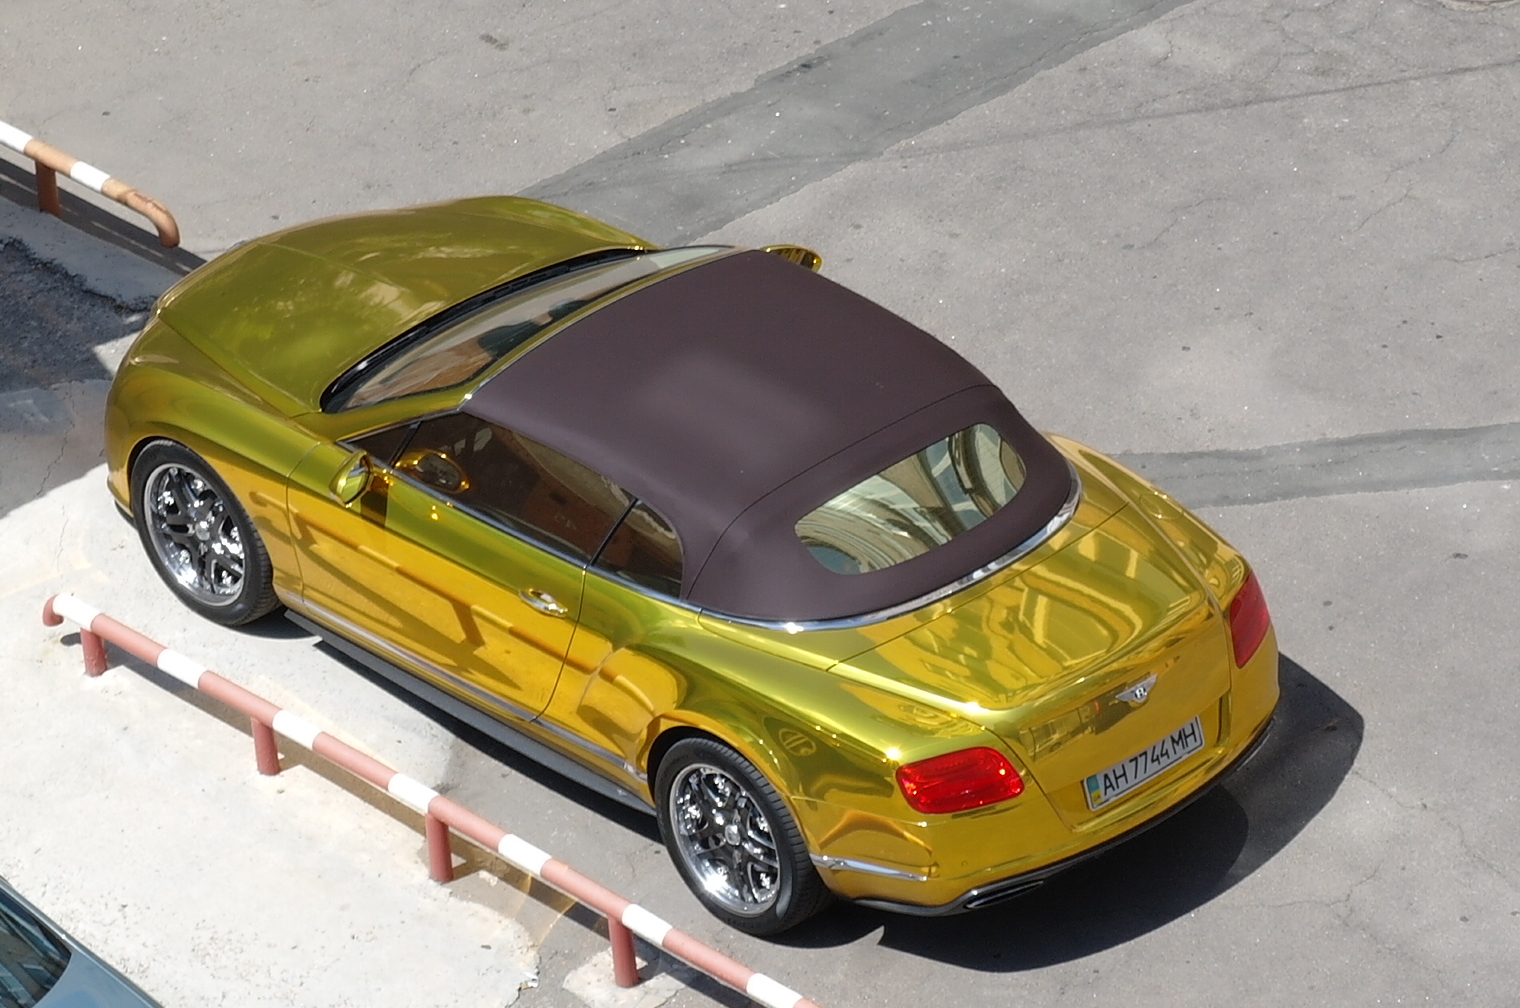 Нашли золотую машину. Бентли покрытая золотом. С золотой крышей авто. Машина двухцветная с золотистой крышей. Золотая машина с черной крышей.